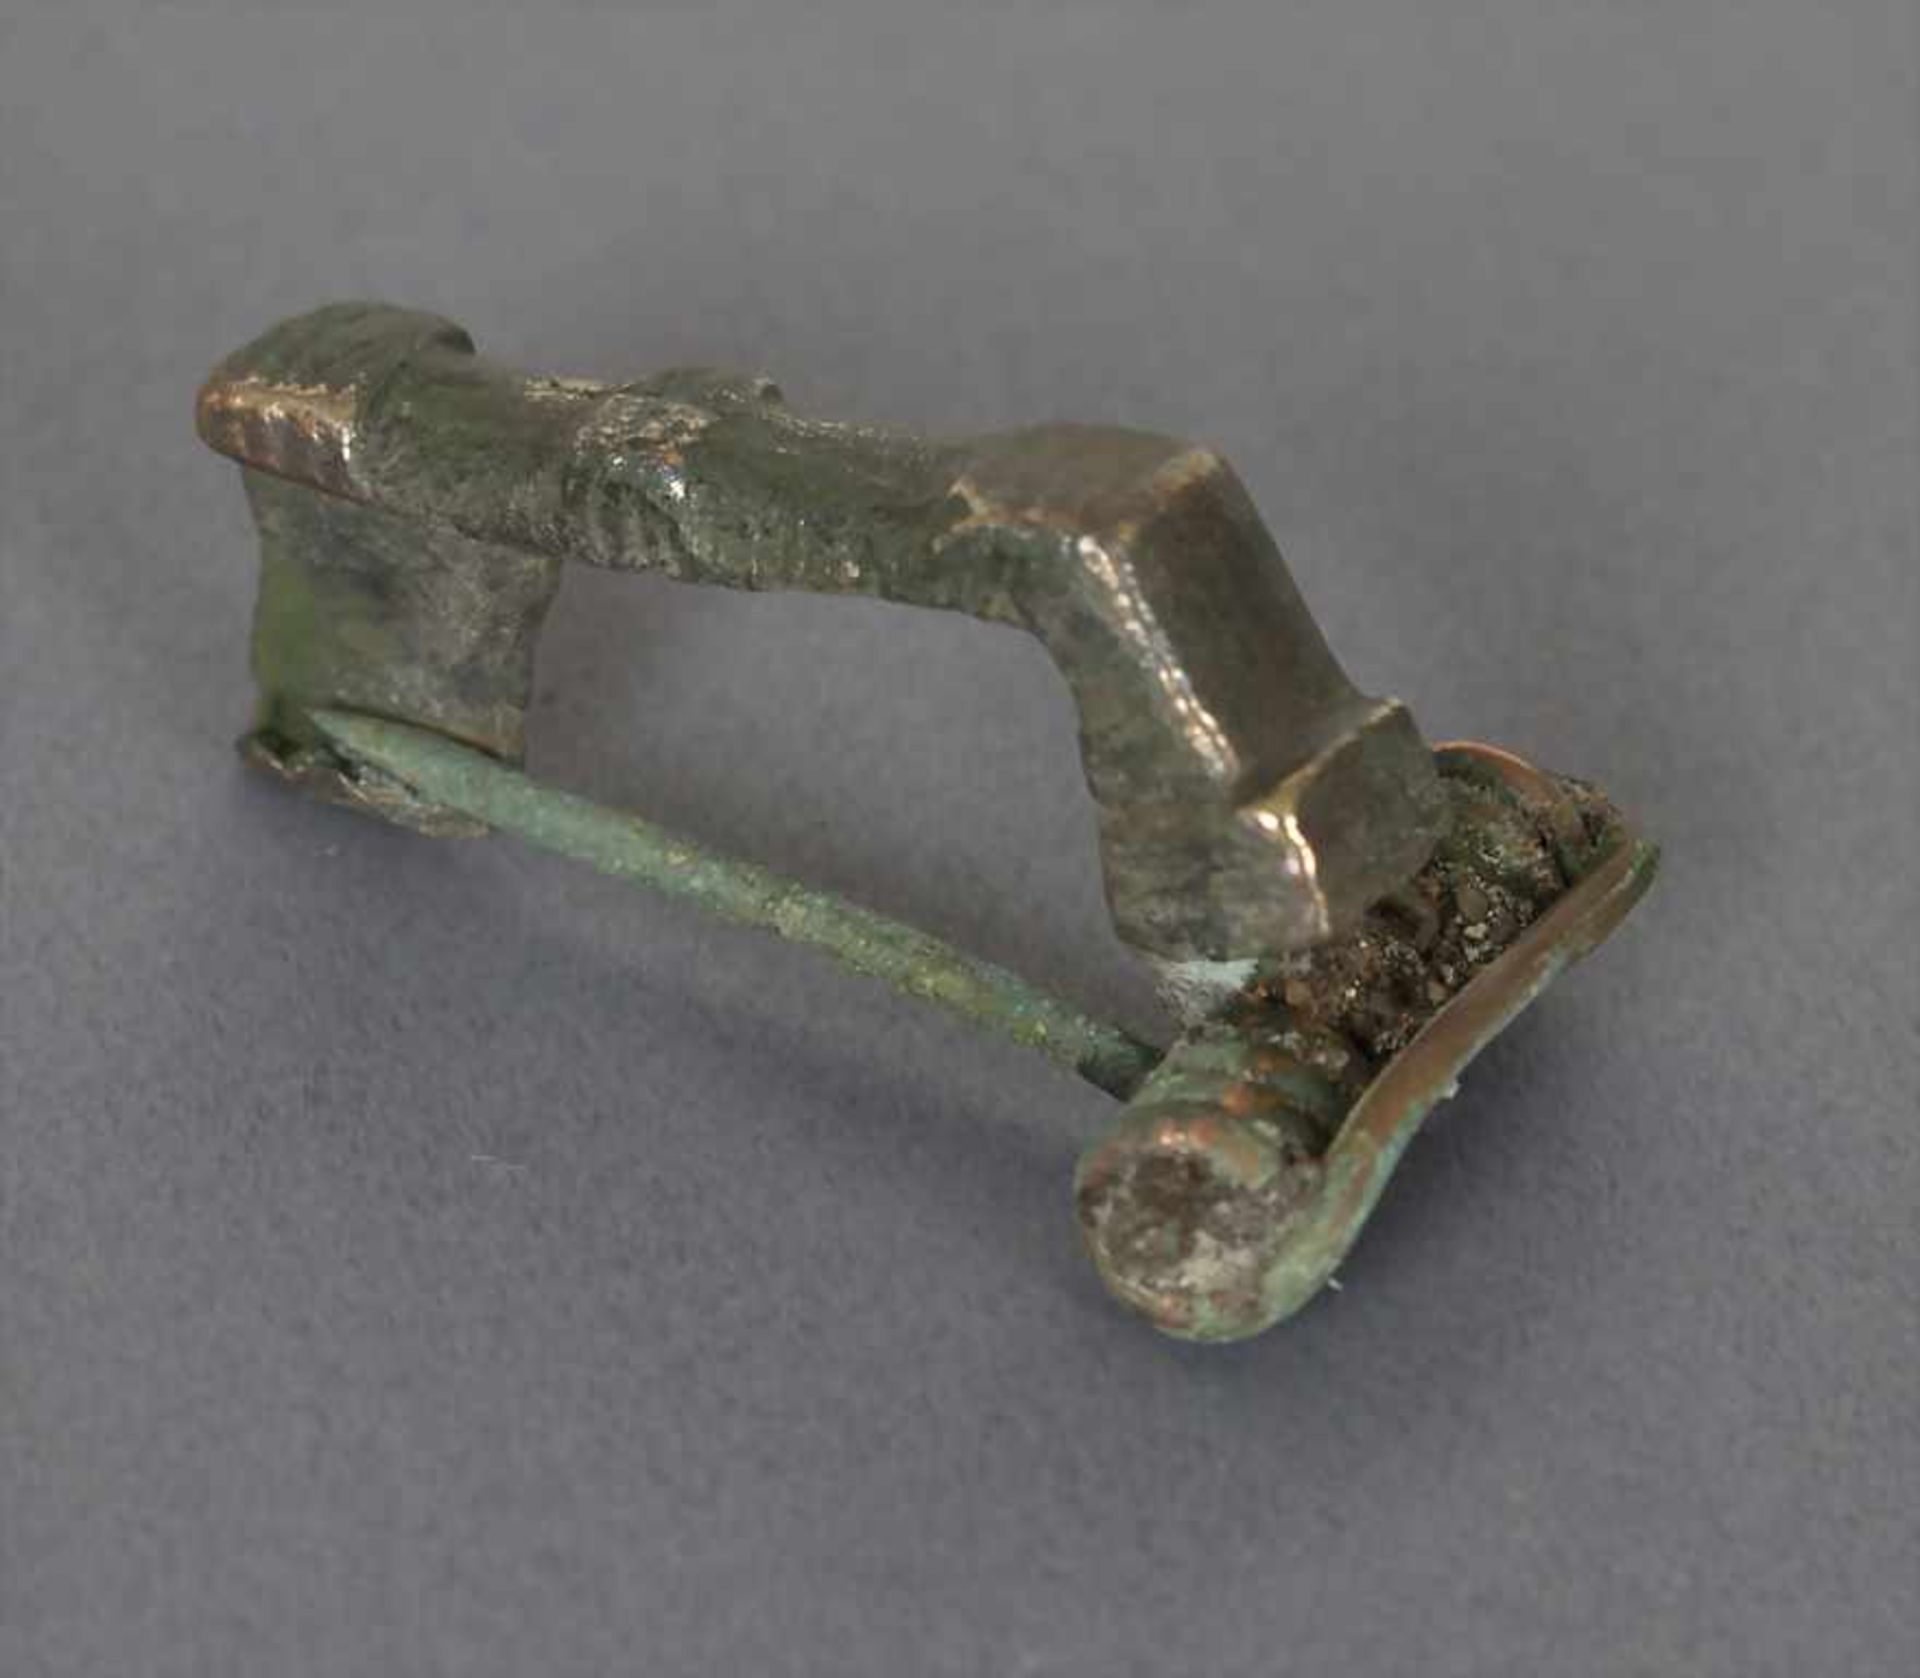 Römische Fibel / A Roman fibulaMaterial: Bronze,Länge: 3,2 cm,Zustand: gut, alt restauriert,